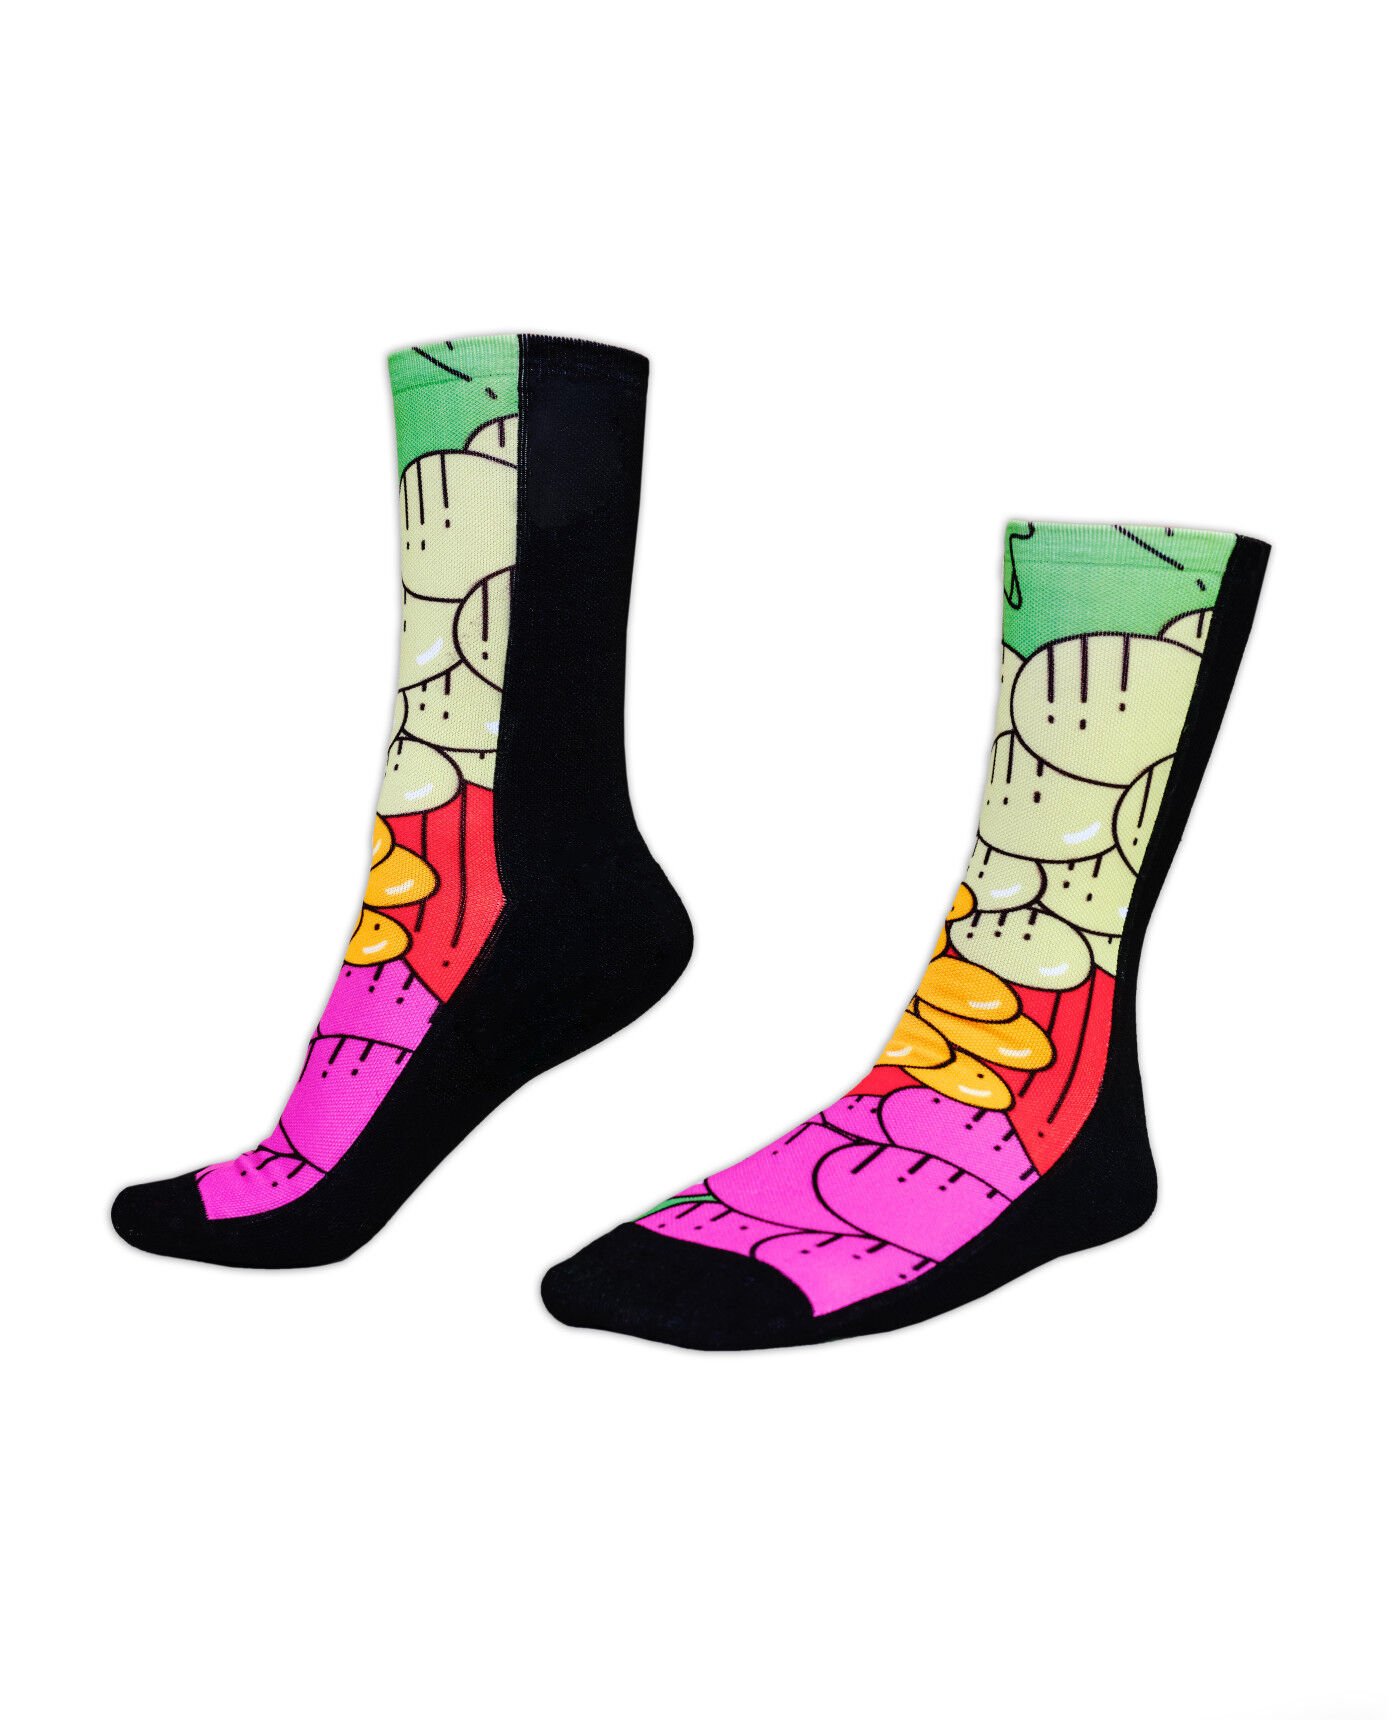 Fruit Themed Socks Cotton Socks Party Fruit Design Socks Fruit Patterned Men's Socks Party Socks Fruit Themed Socks